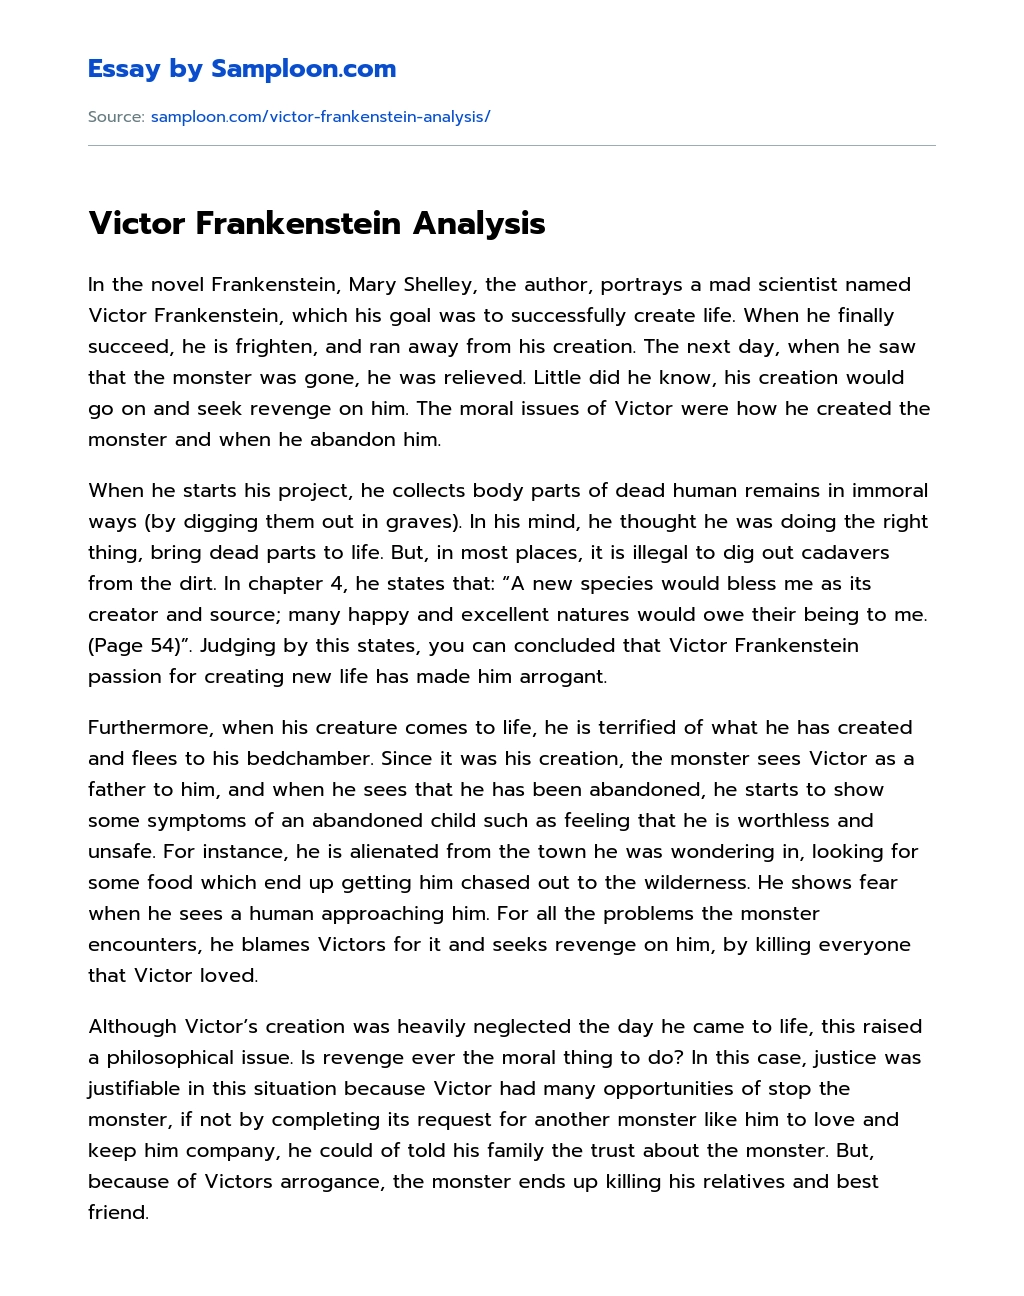 Victor Frankenstein Analysis essay